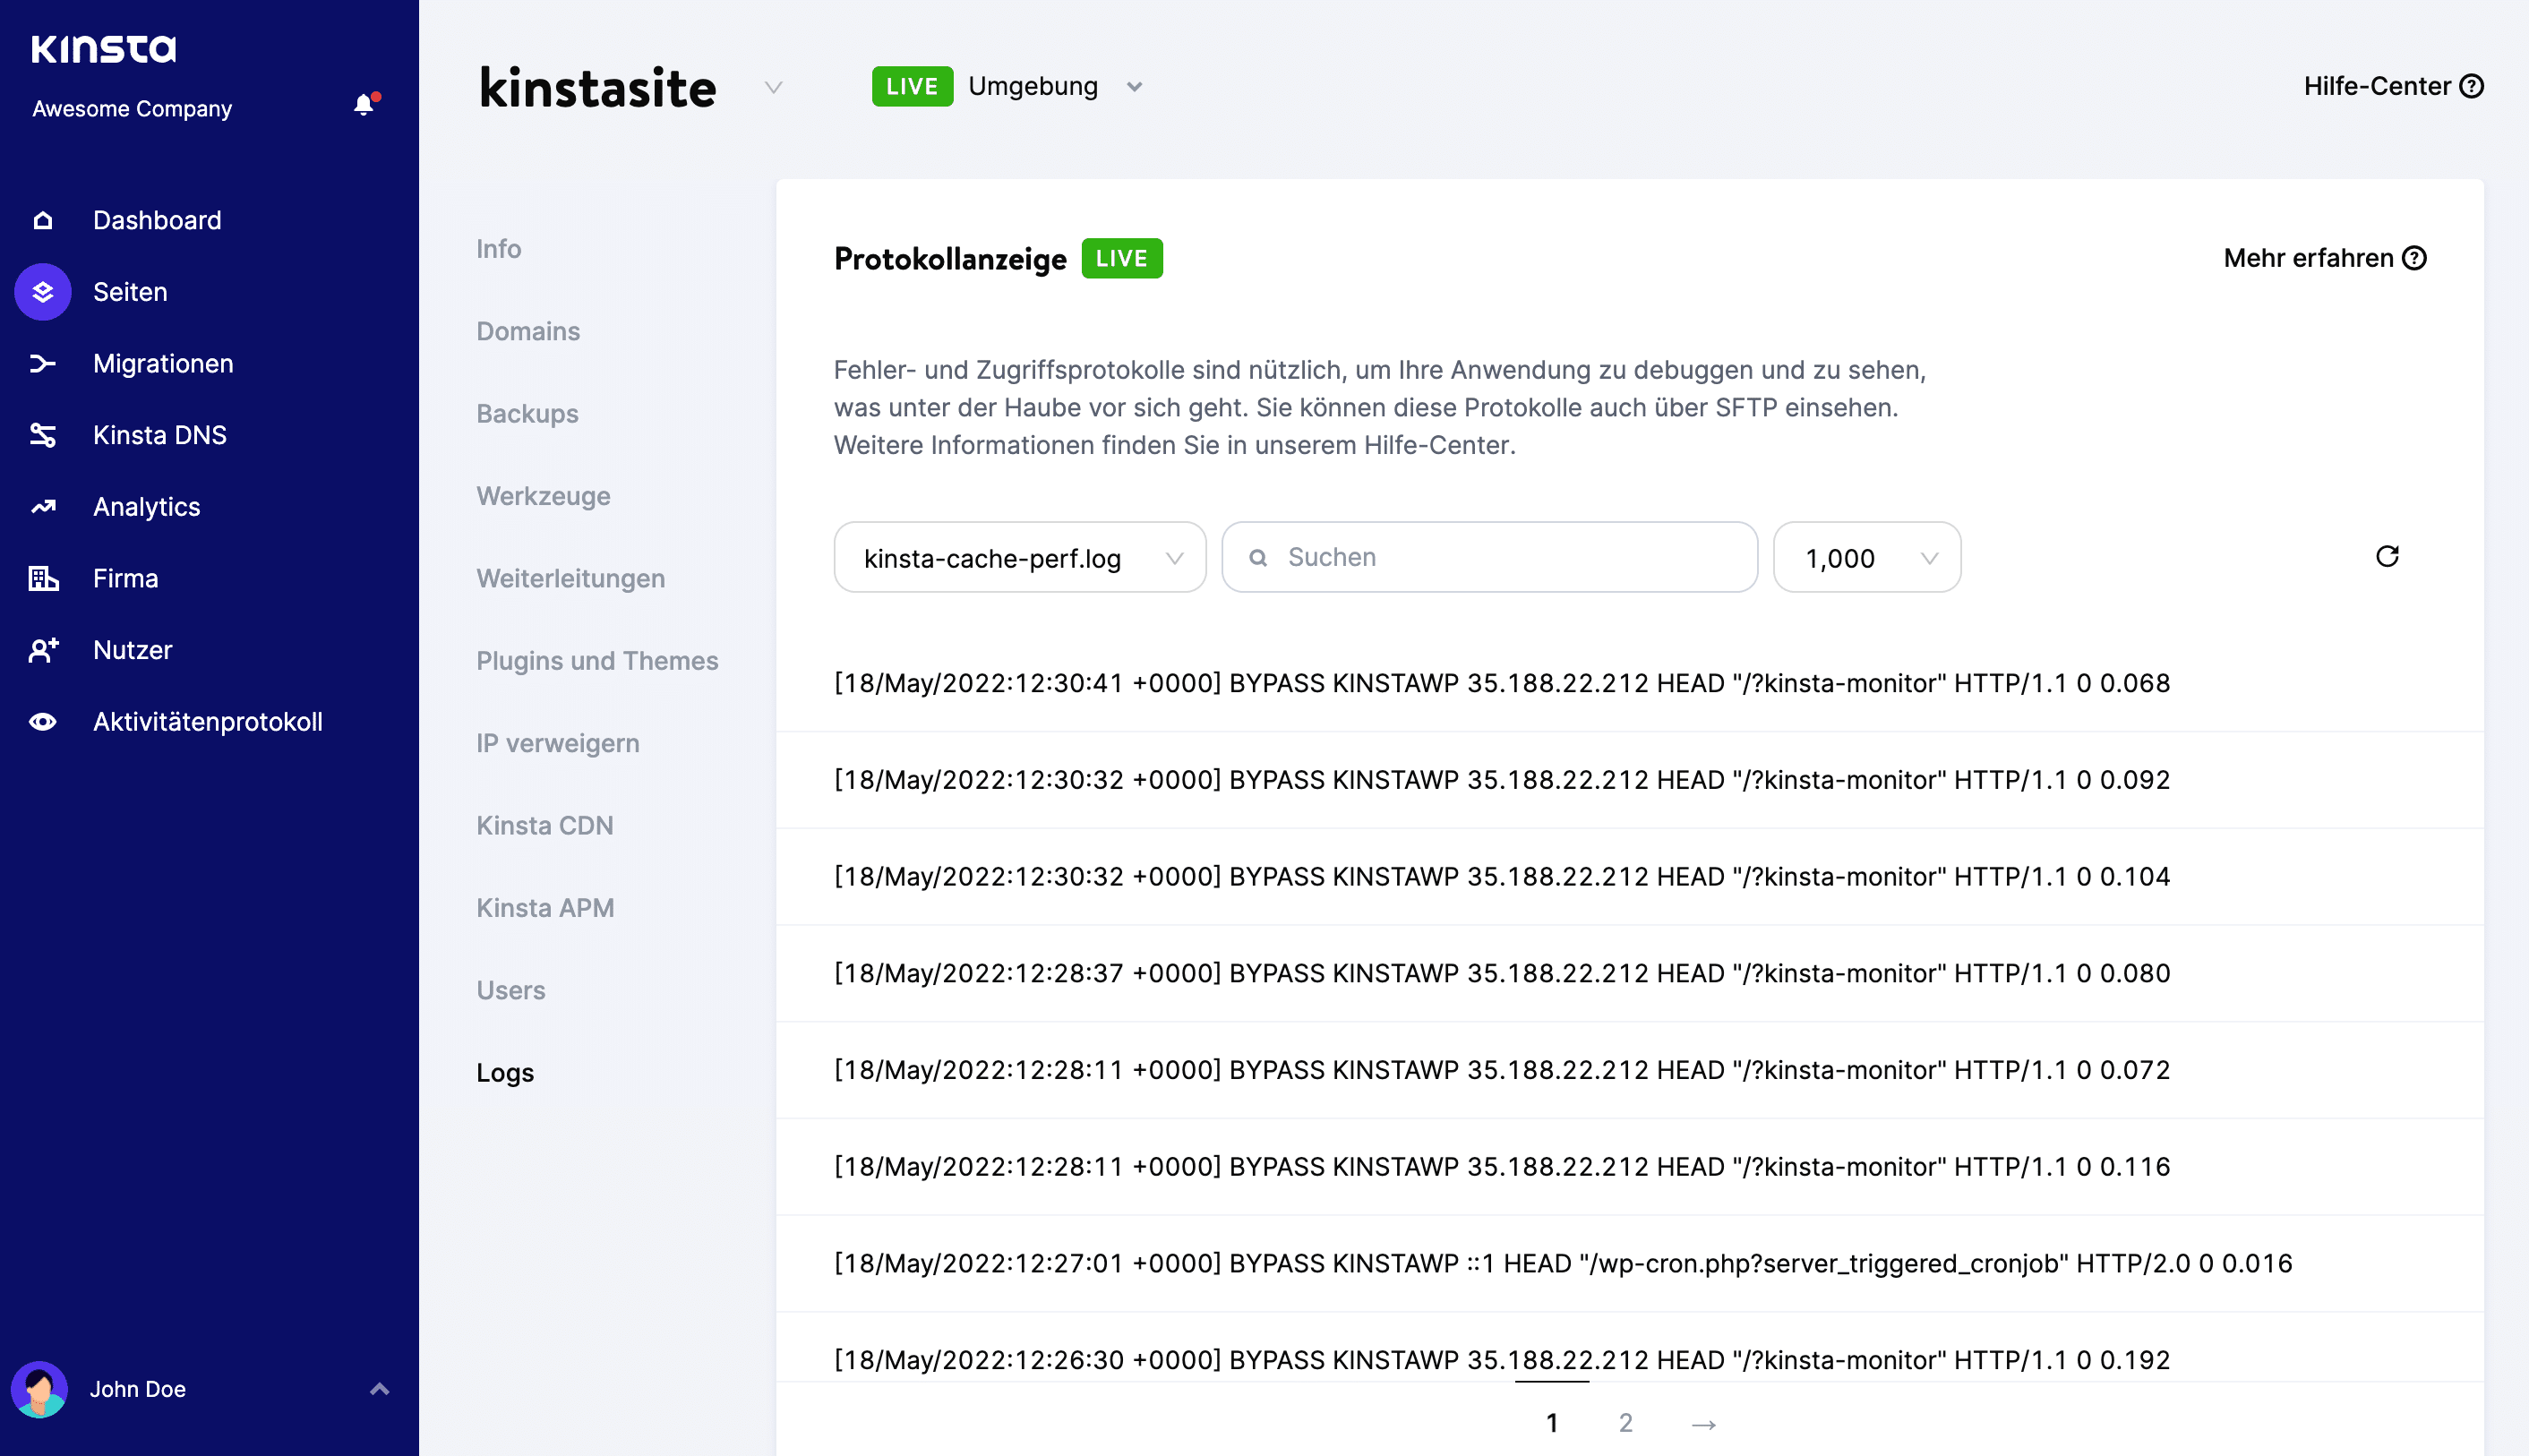 kinsta-cache-perf.log Datei in MyKinsta Log Viewer.